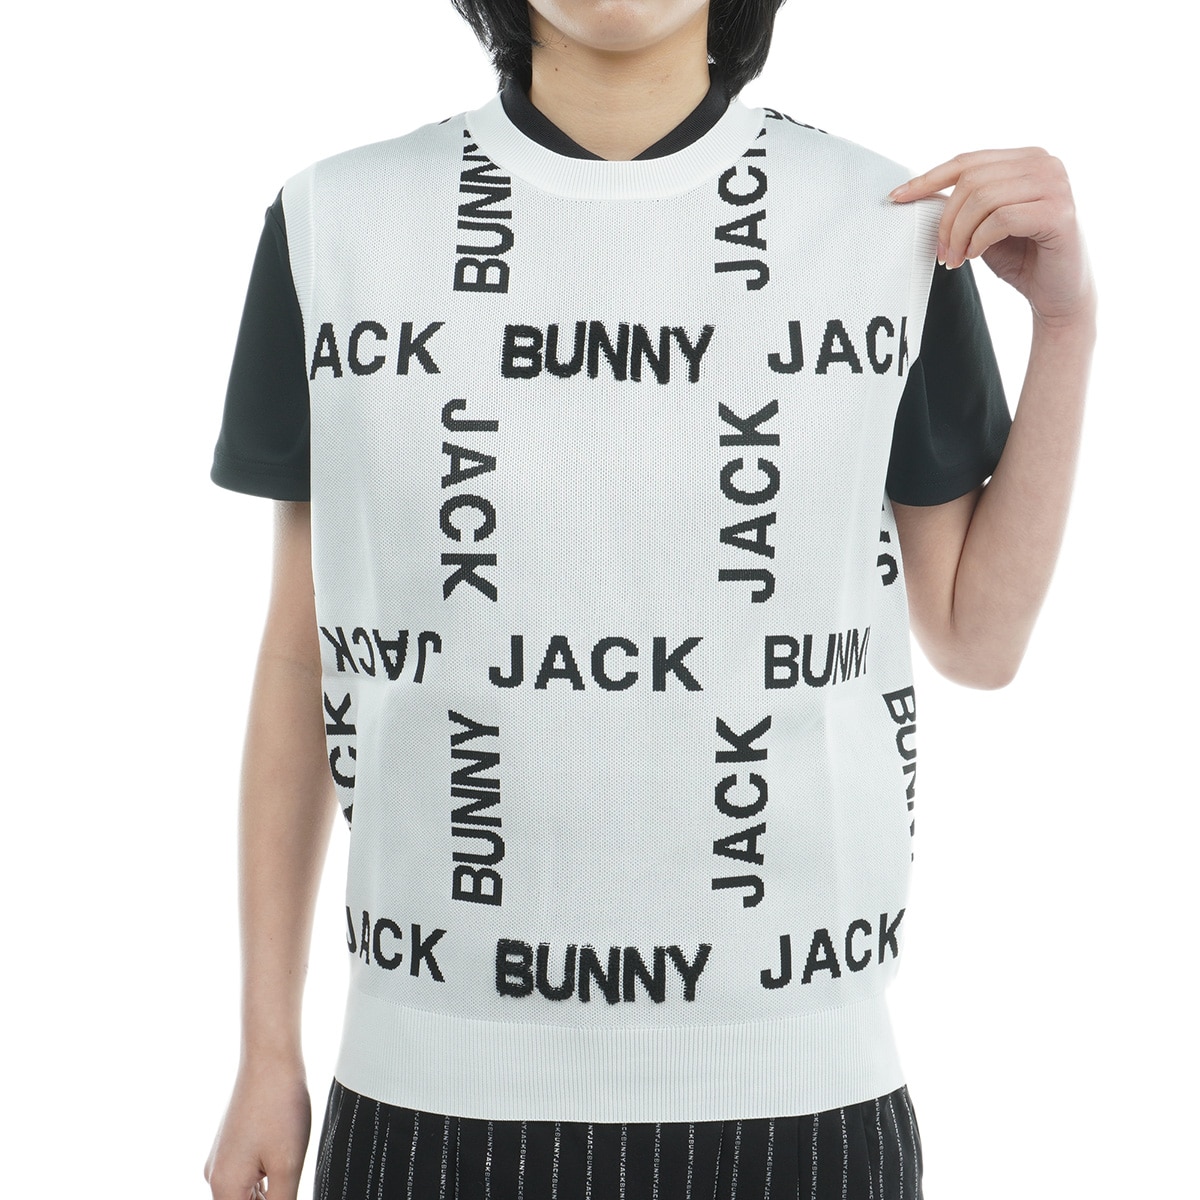 Wジャカード ニットベスト レディス(ベスト)|Jack Bunny!!(ジャック